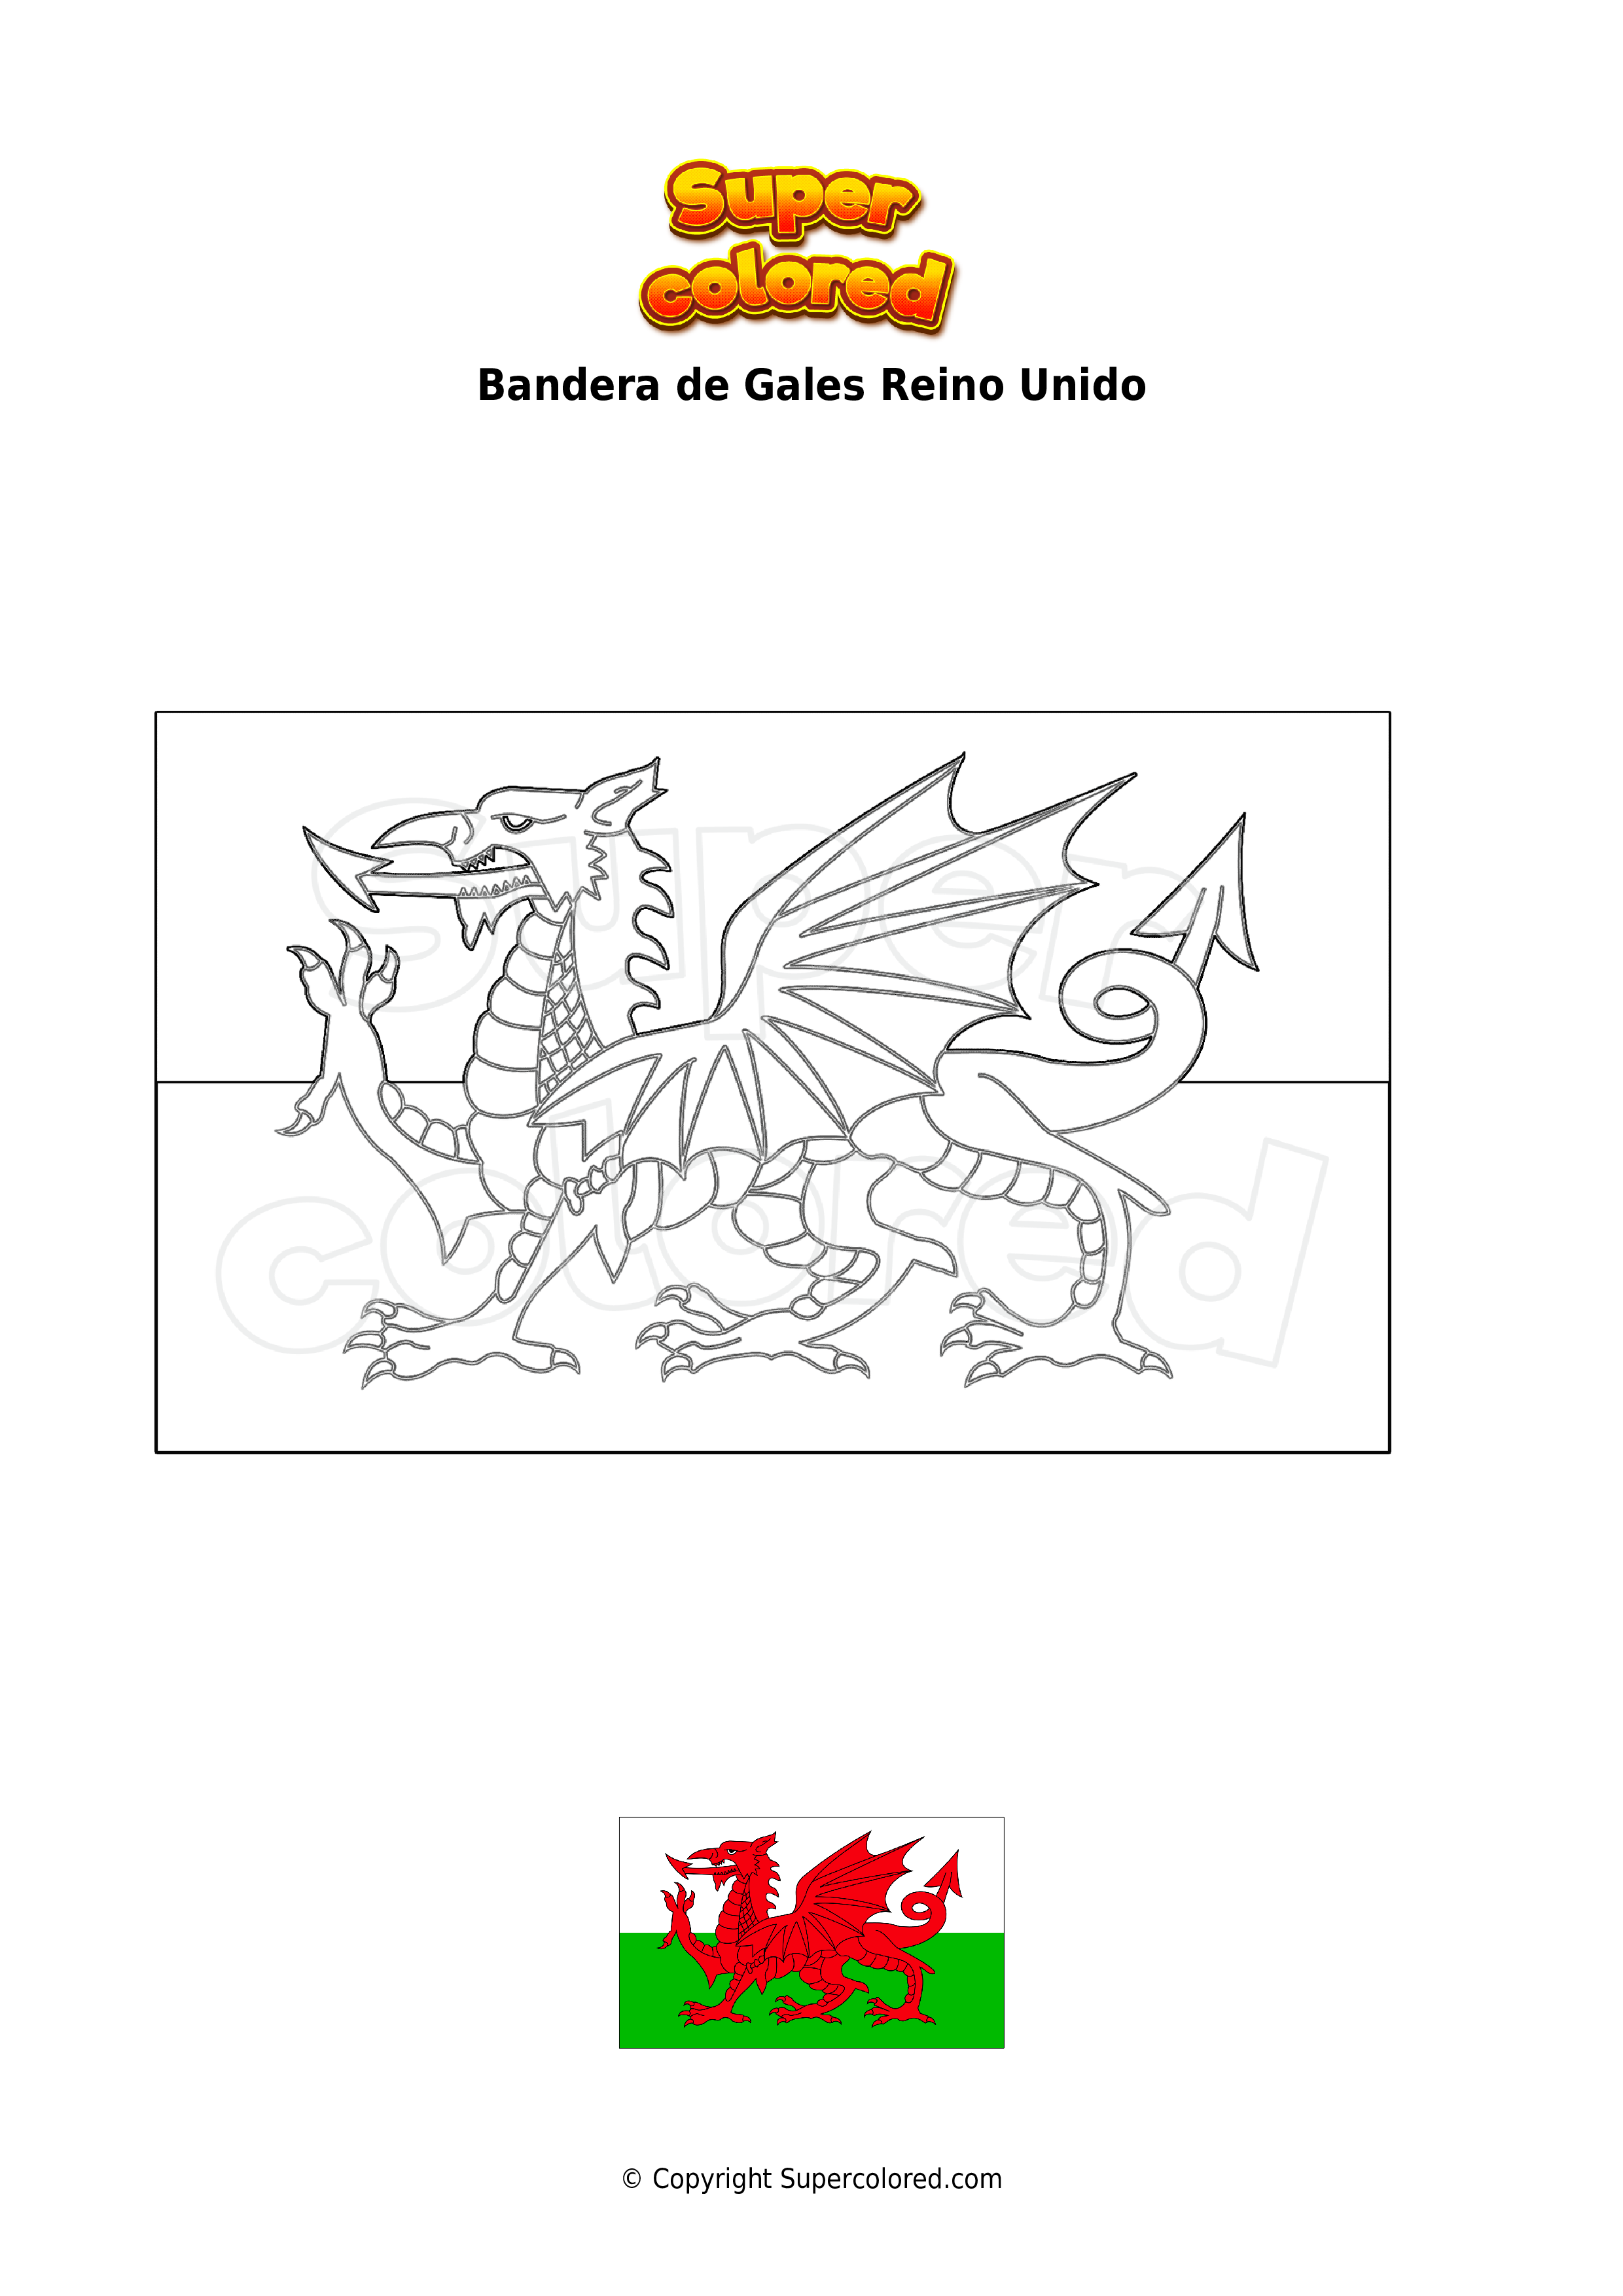 Malversar En la madrugada Gracioso Dibujo para colorear Bandera de Gales Reino Unido - Supercolored.com